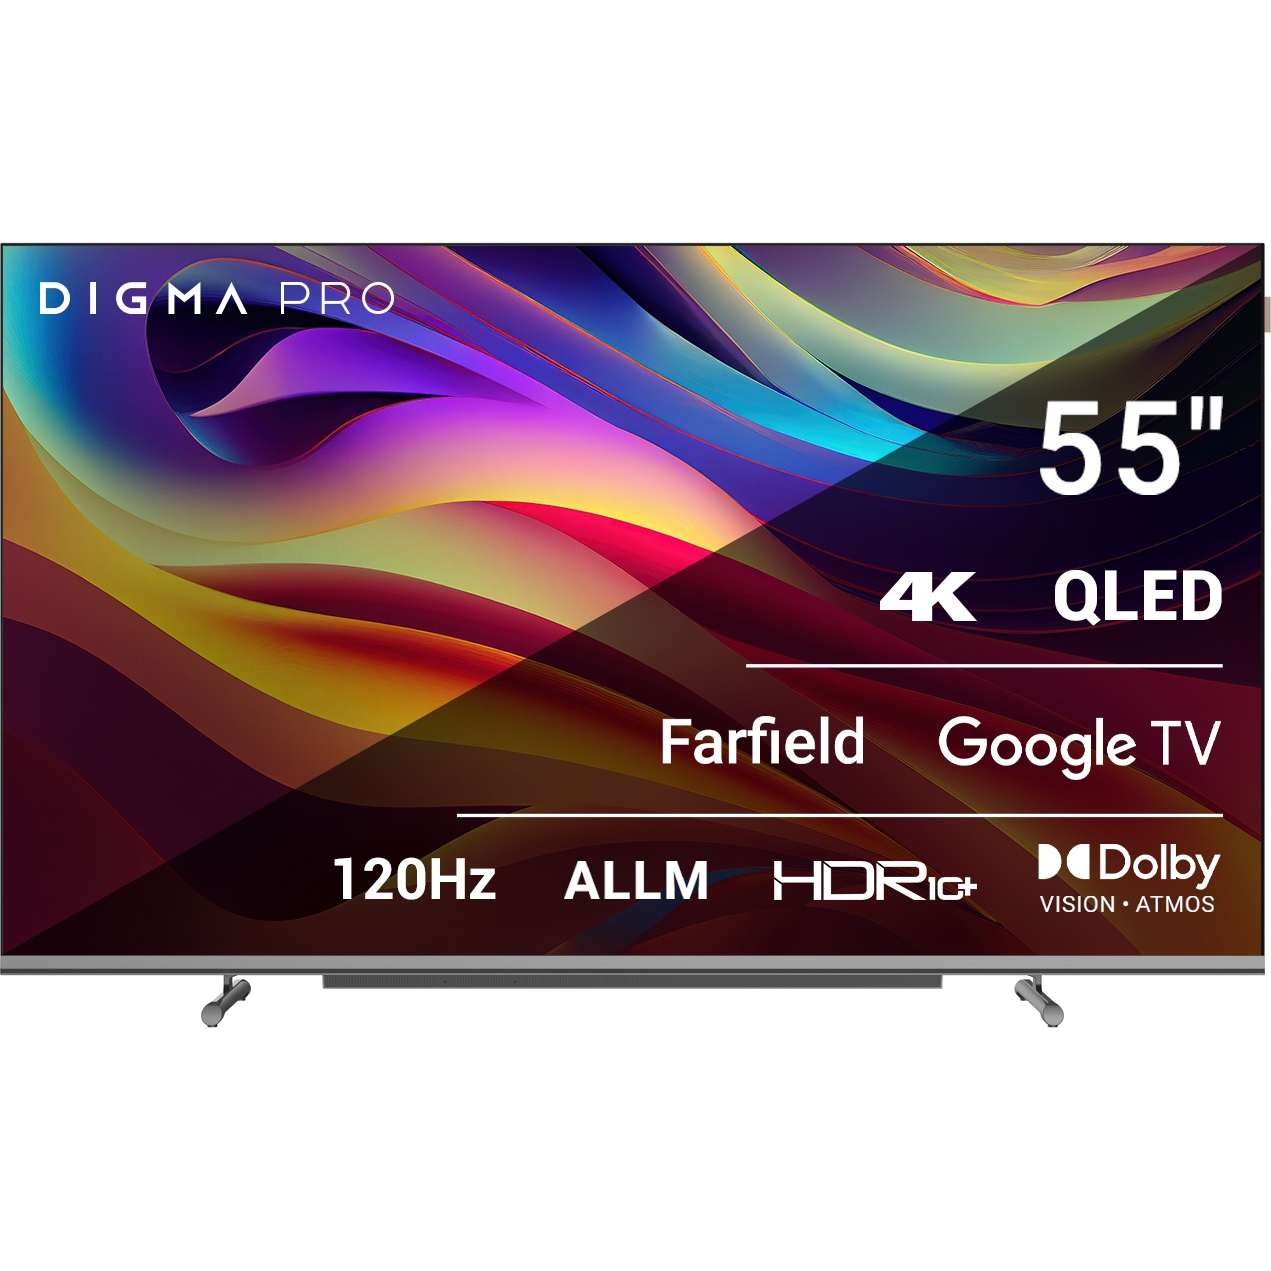 Телевизор Digma Pro 55 55L телевизор digma pro google tv qled 55l 55 qled 4k ultra hd google tv черный